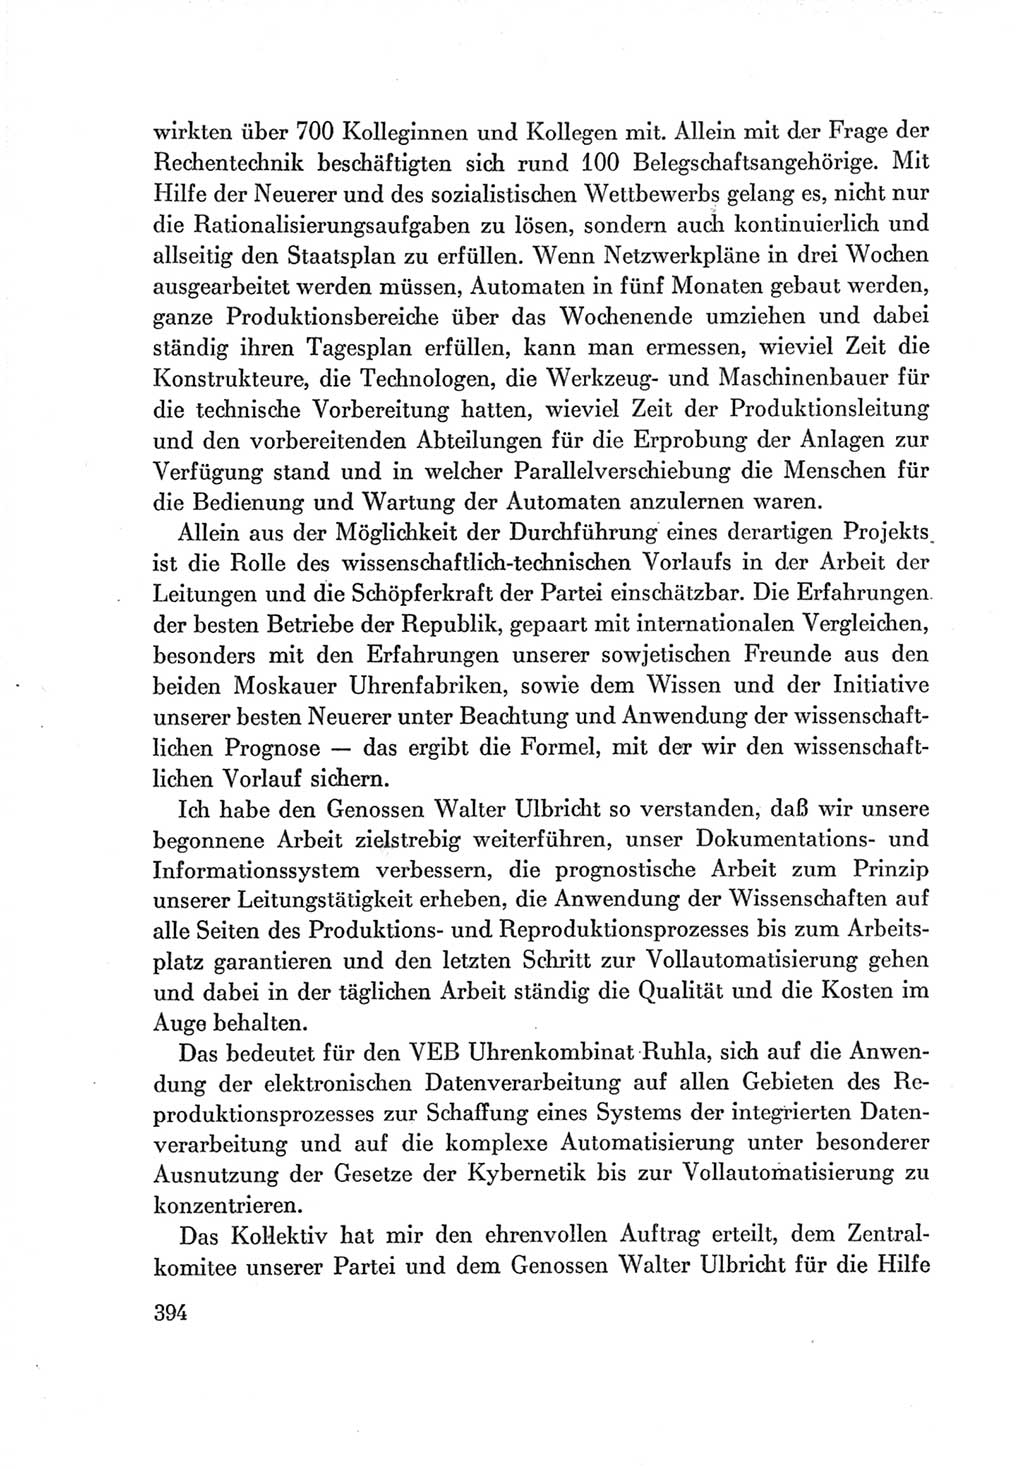 Protokoll der Verhandlungen des Ⅶ. Parteitages der Sozialistischen Einheitspartei Deutschlands (SED) [Deutsche Demokratische Republik (DDR)] 1967, Band Ⅰ, Seite 394 (Prot. Verh. Ⅶ. PT SED DDR 1967, Bd. Ⅰ, S. 394)